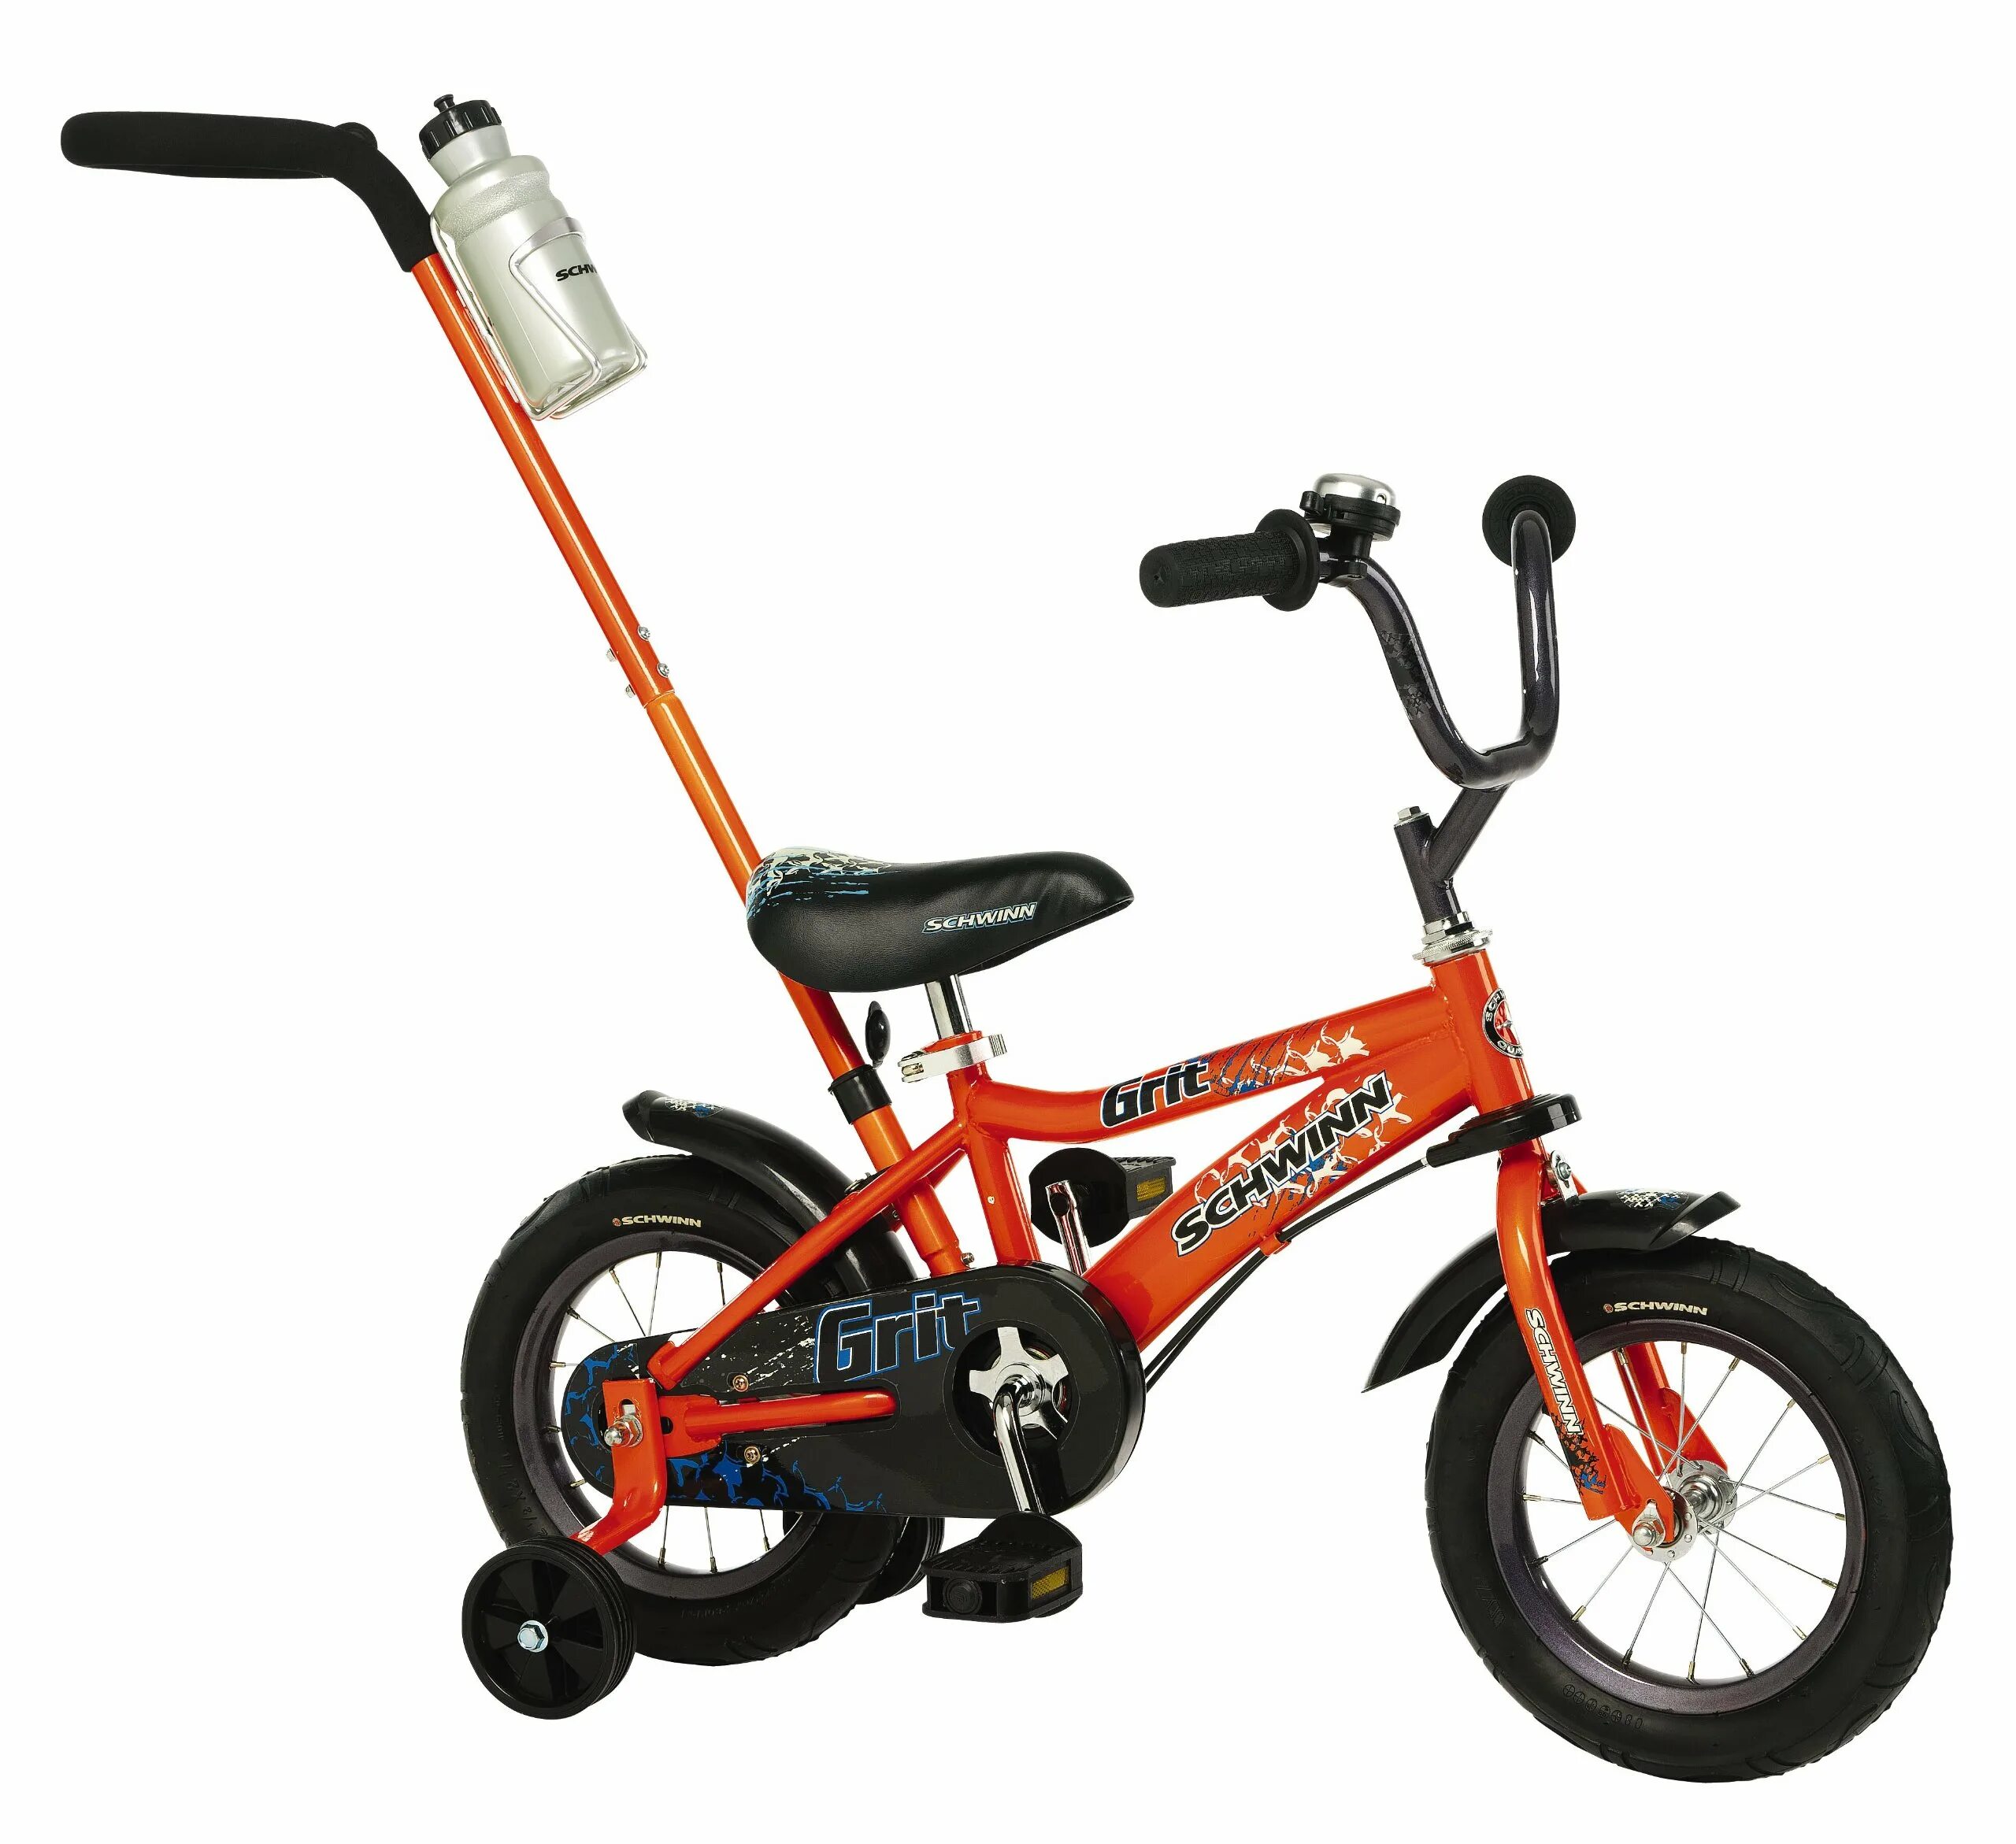 Schwinn детский велосипед 12 дюймов. Mars с ручкой велосипед 12 дюймов. Schwinn велосипед детский двухколесный. Велосипед четырехколесный детский с ручкой. Велосипед детский четырехколесный купить